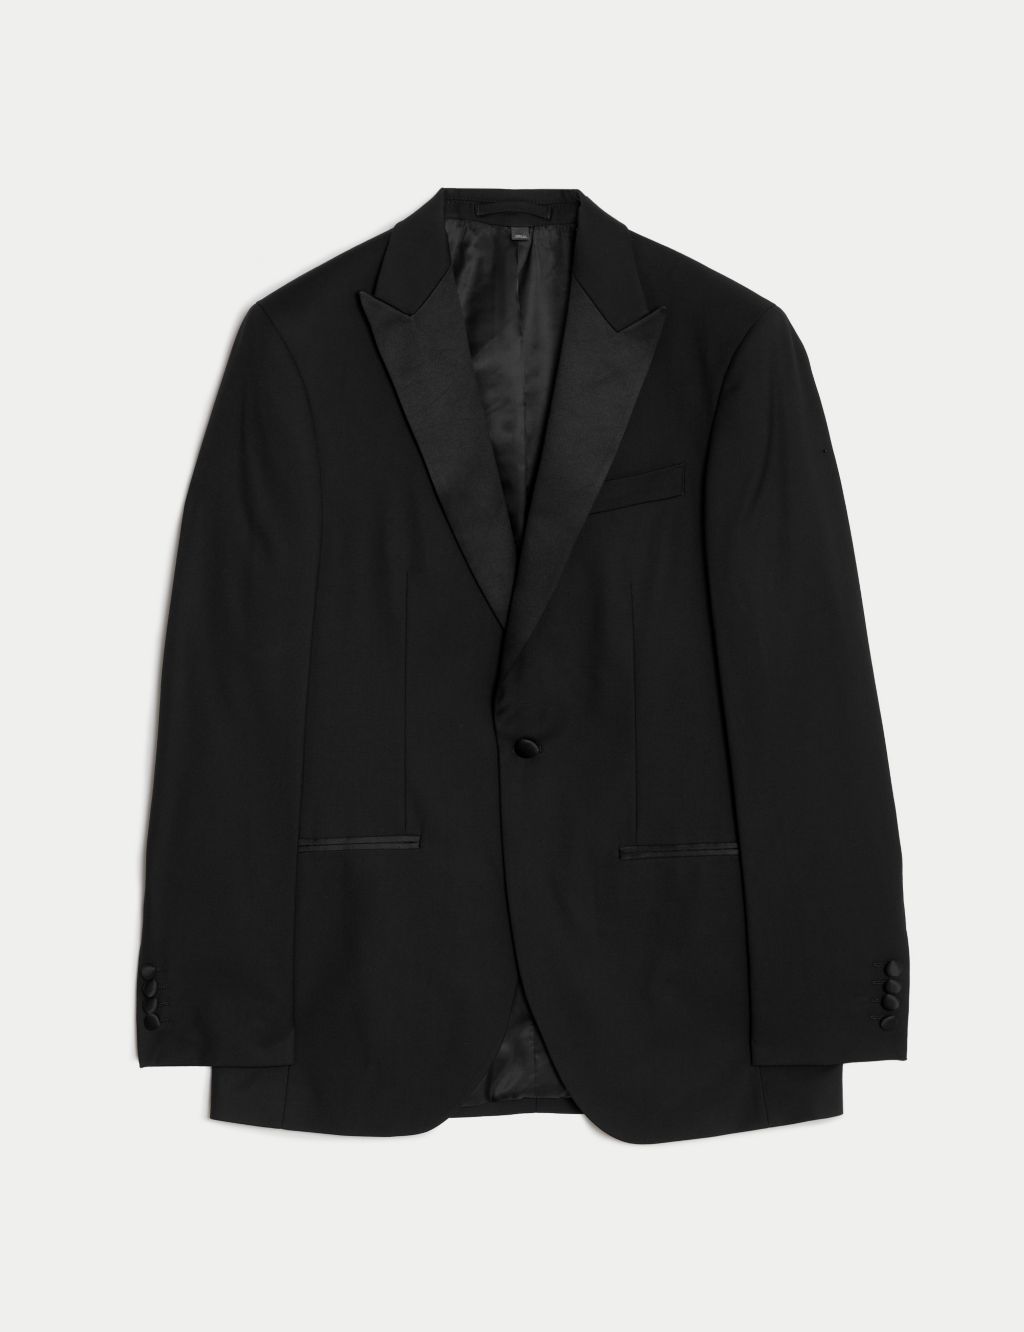 Men's Suit Jackets